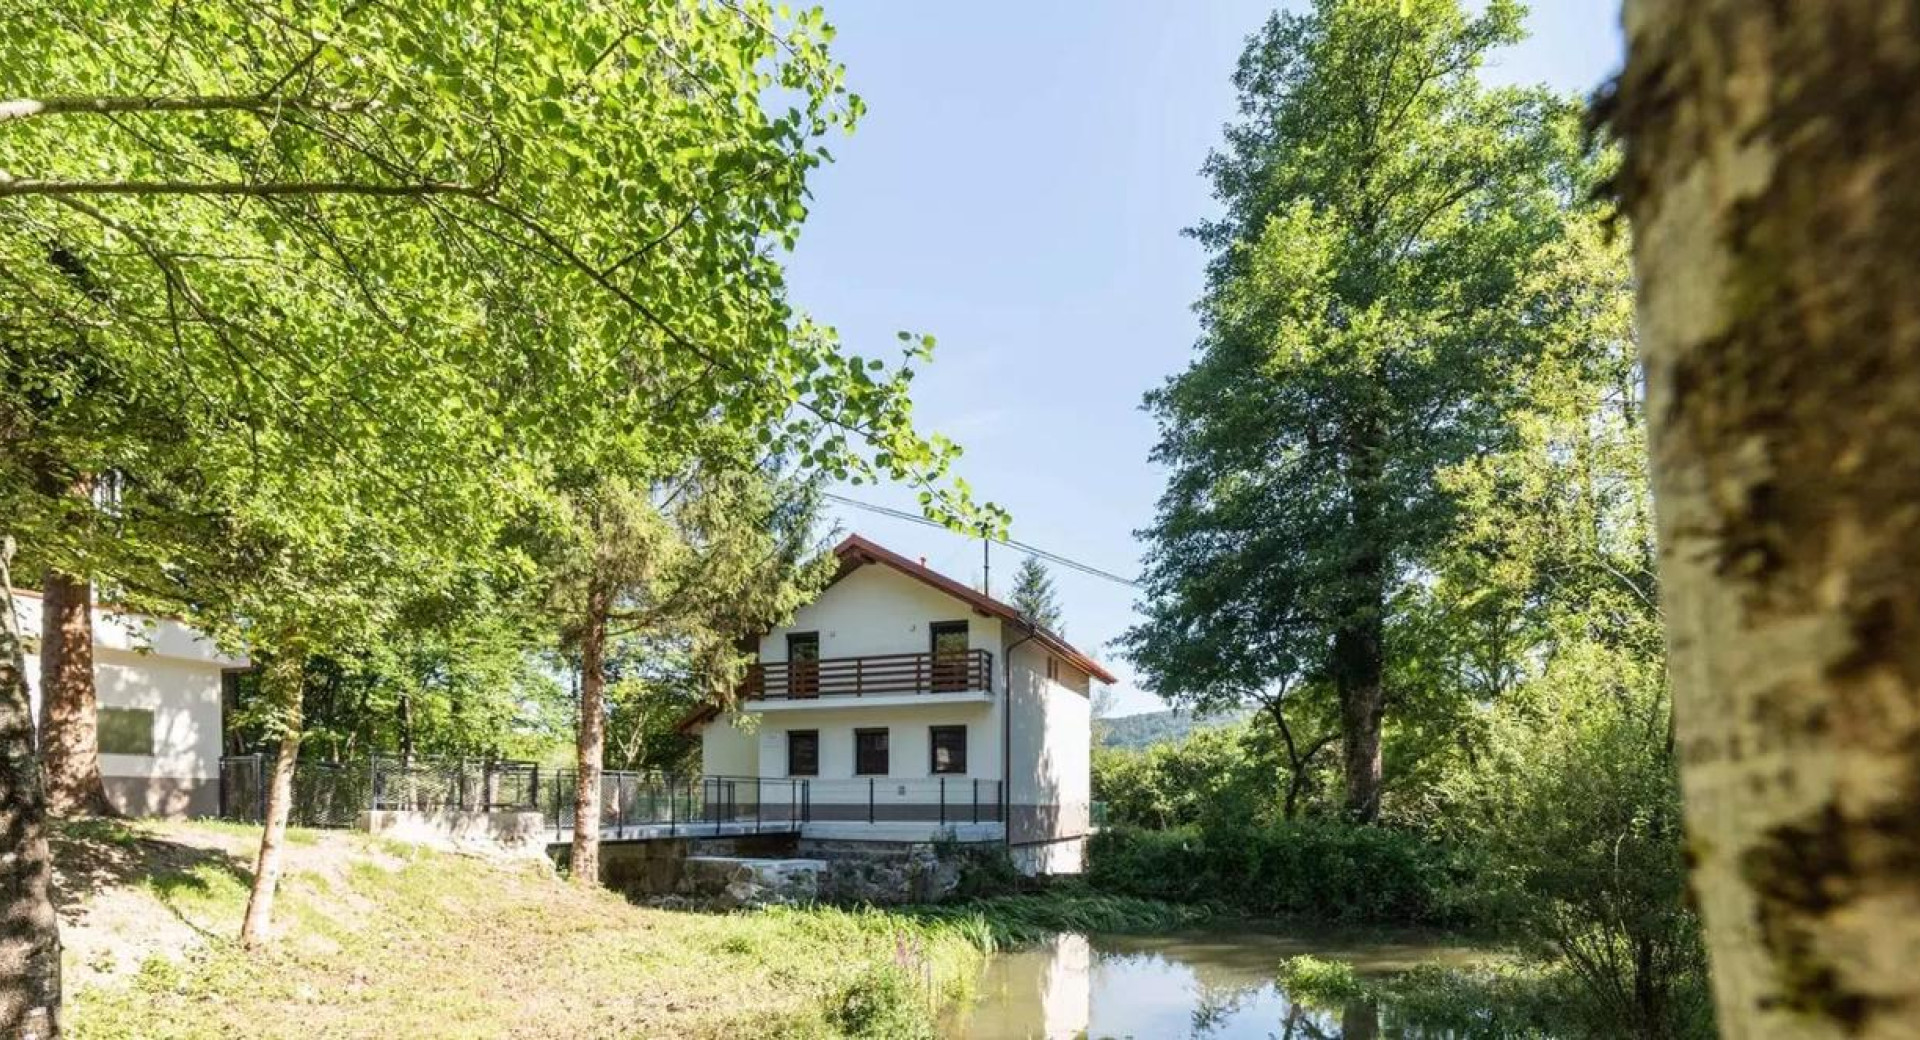 Žabja hiša na Radenskem polju pri Grosupljem, prvo naravovarstveno središče v Sloveniji, ob njej rečica in drevesa